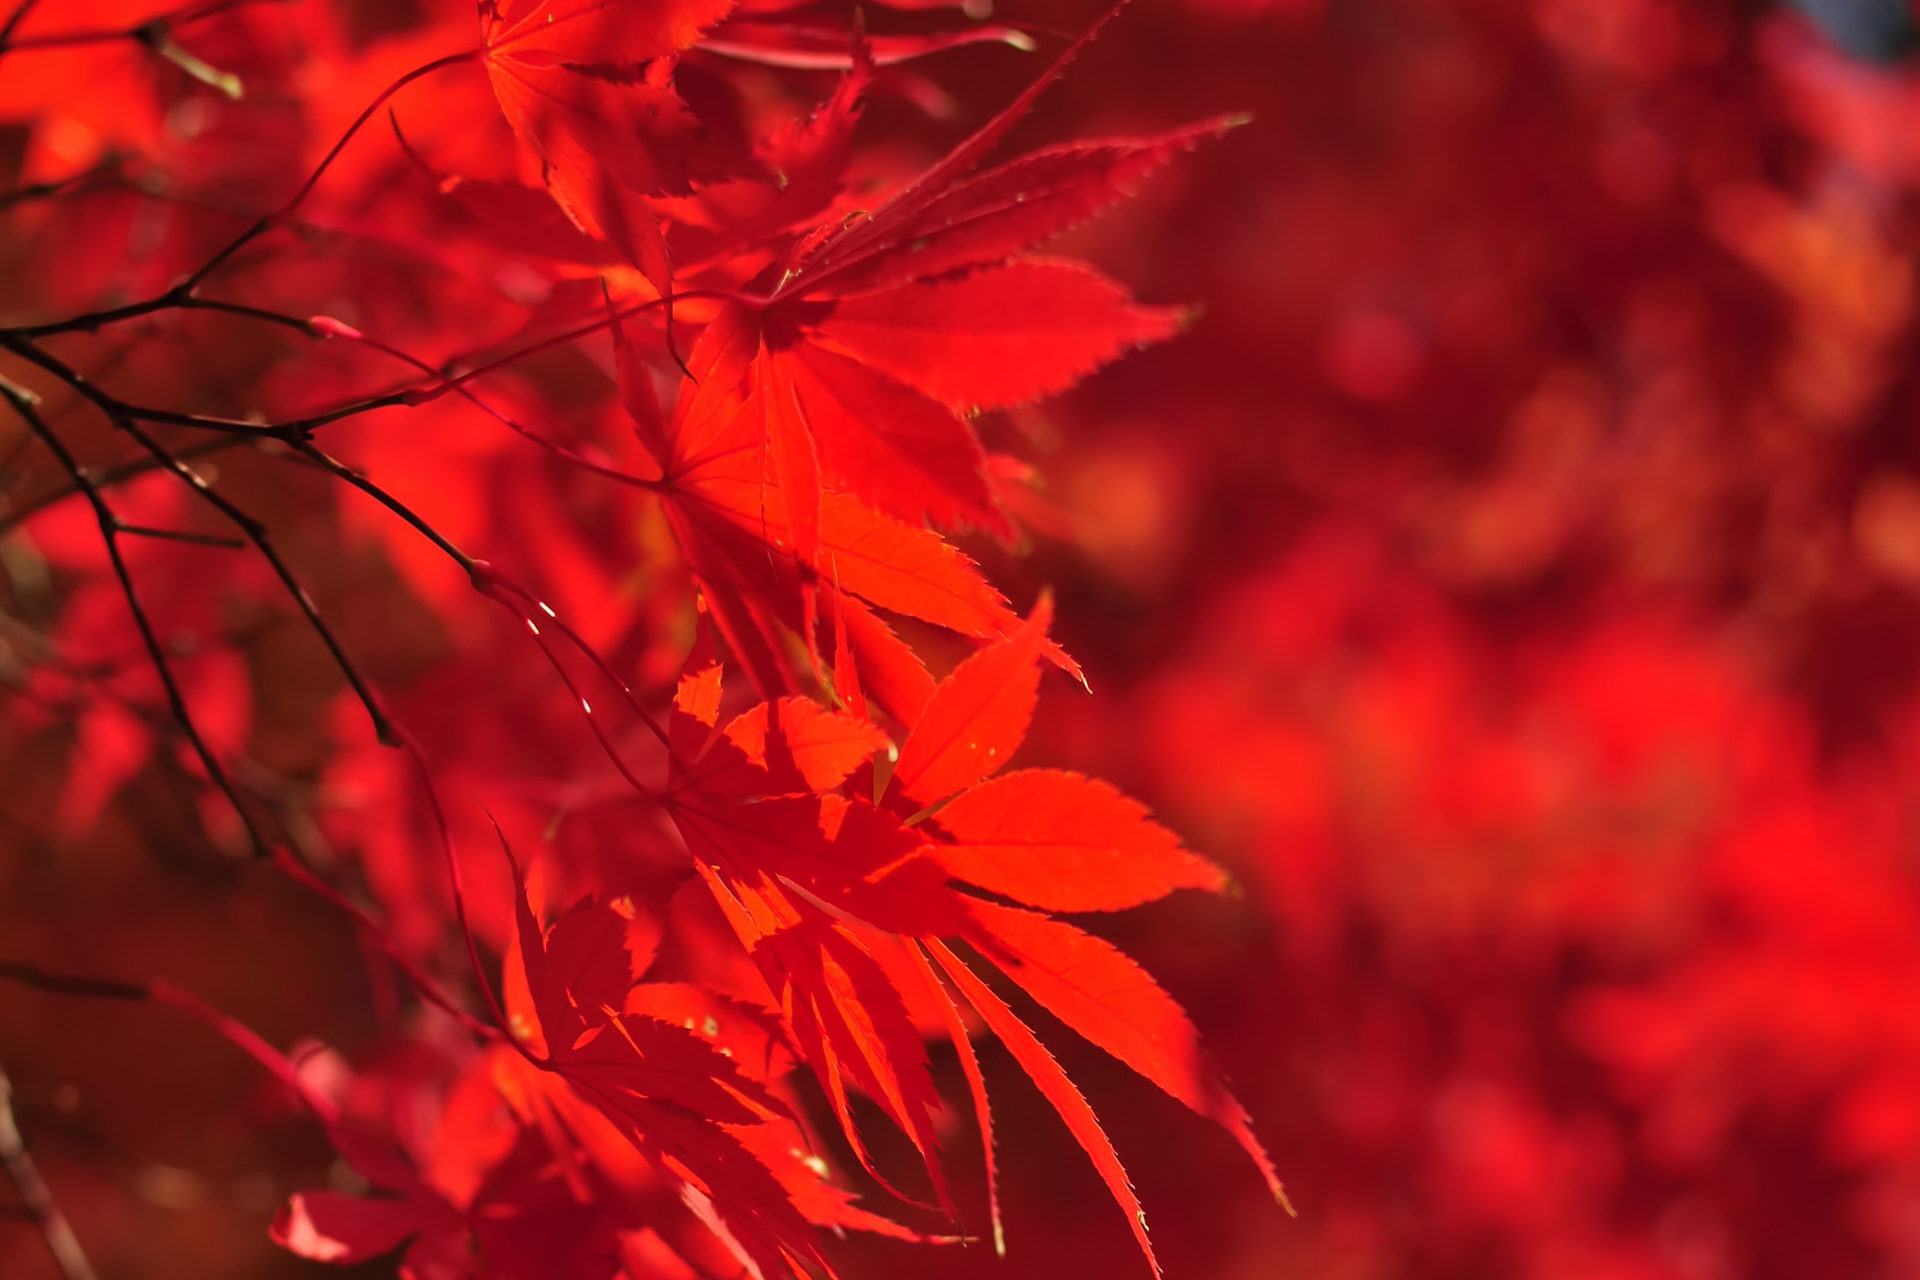 京都的楓葉、燈光資訊